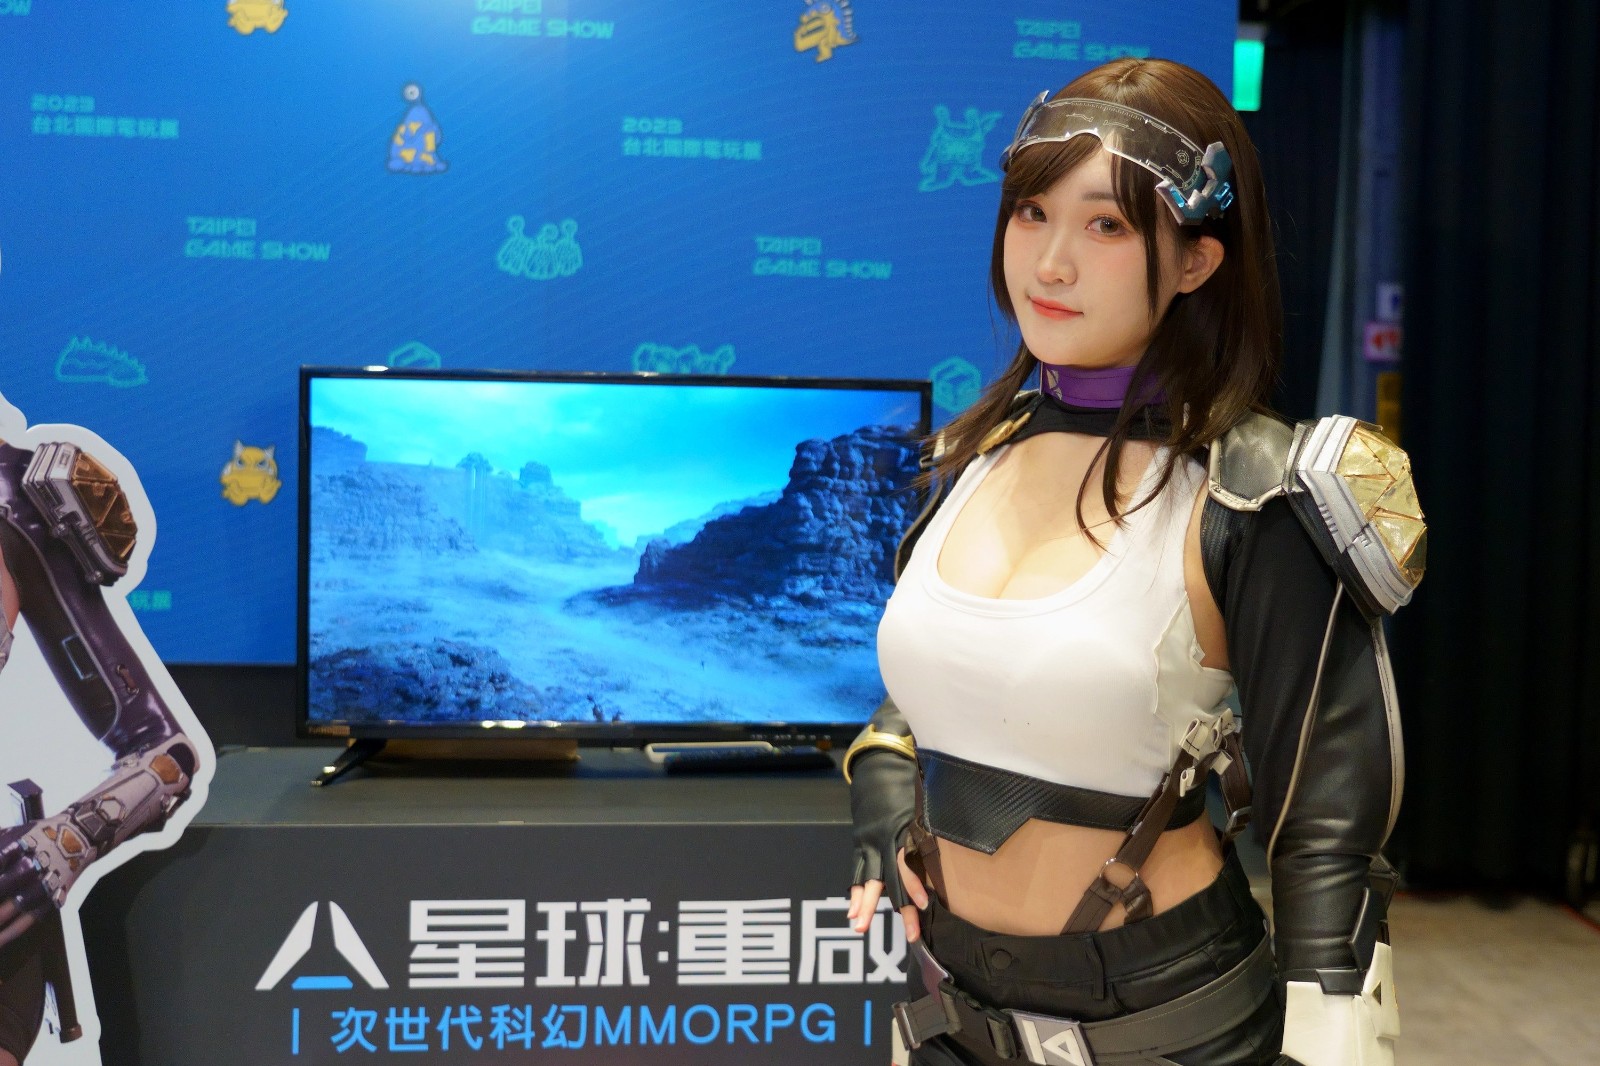 中国台北国际电玩展2月2日开始 任天堂首度参加